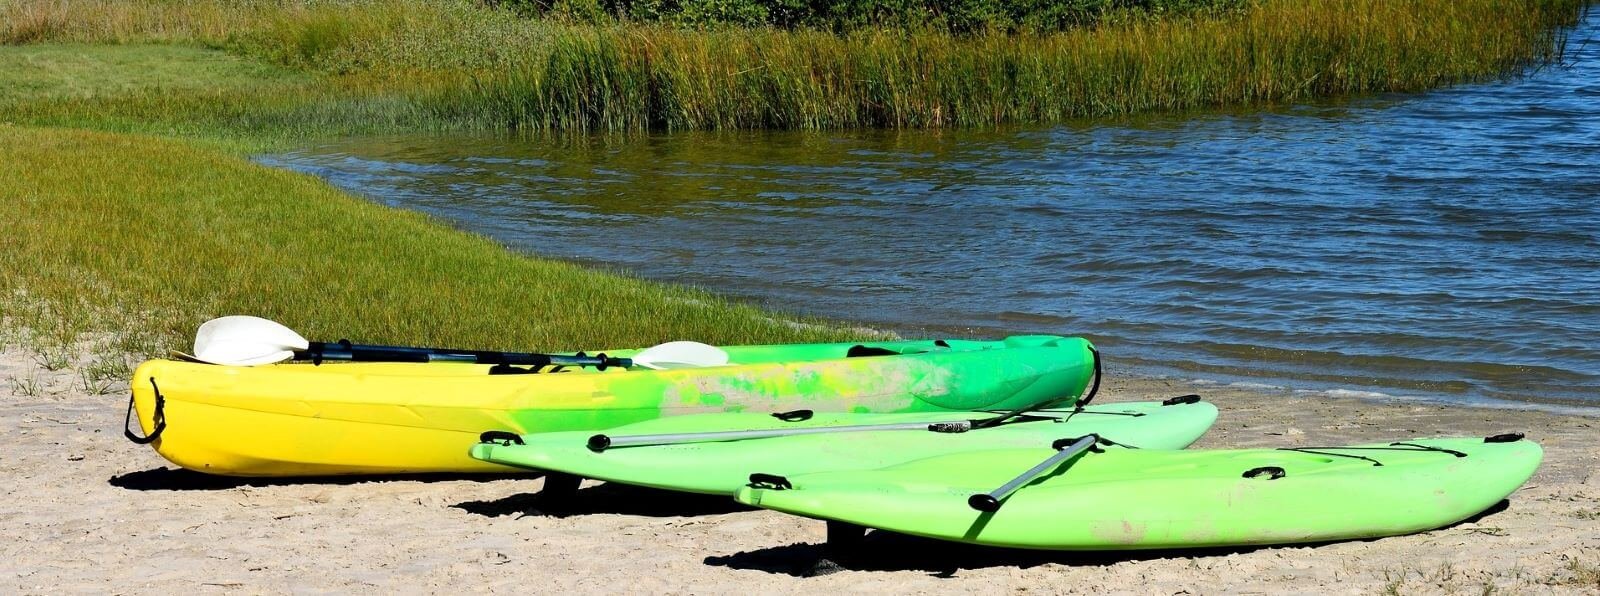 paddle et kayak gonflable sur un rivage de sable